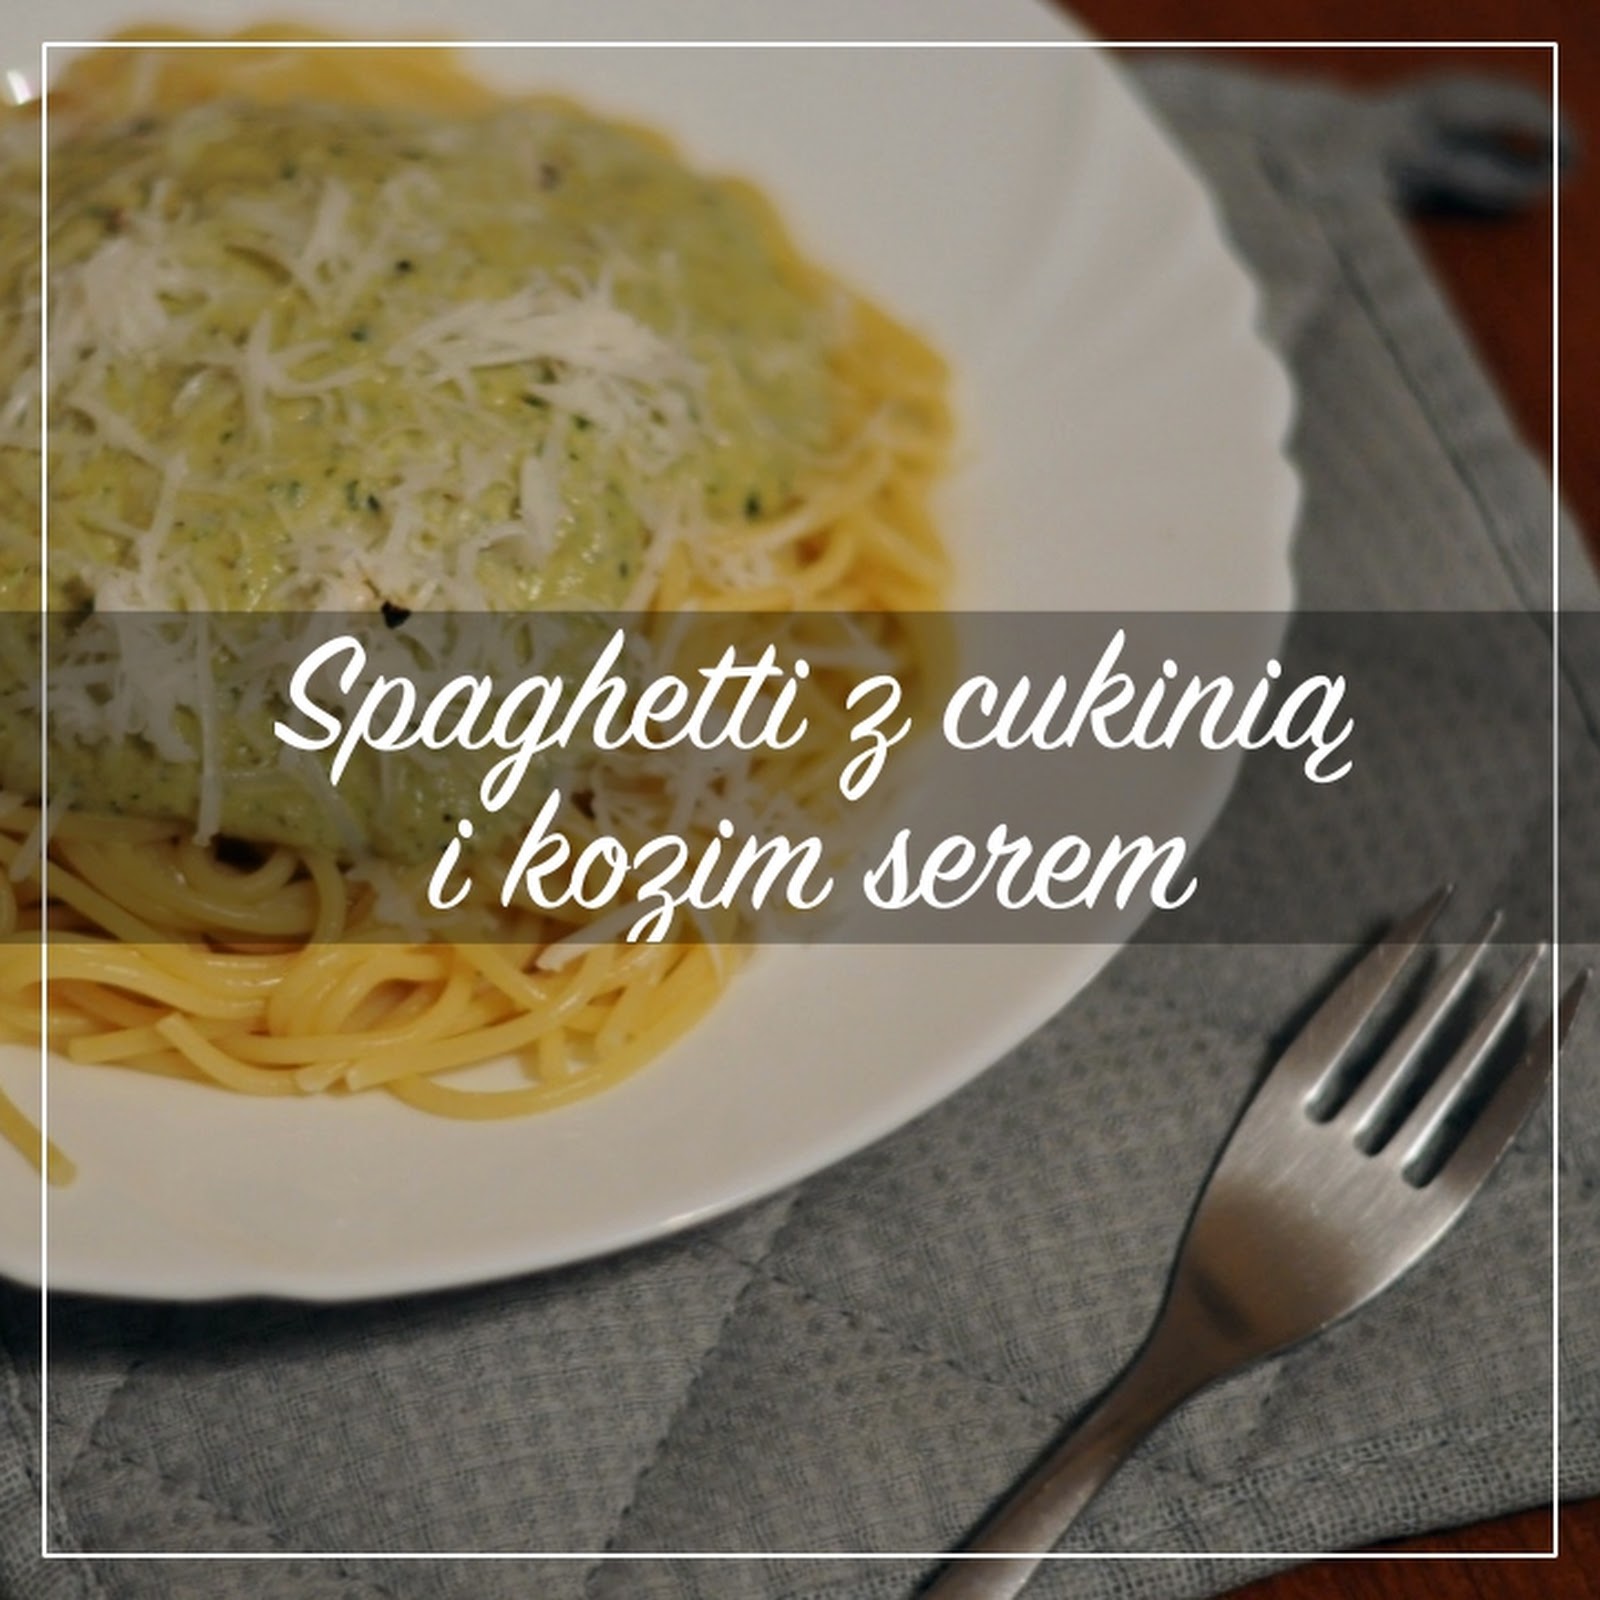 Spaghetti z cukinią i kozim serem